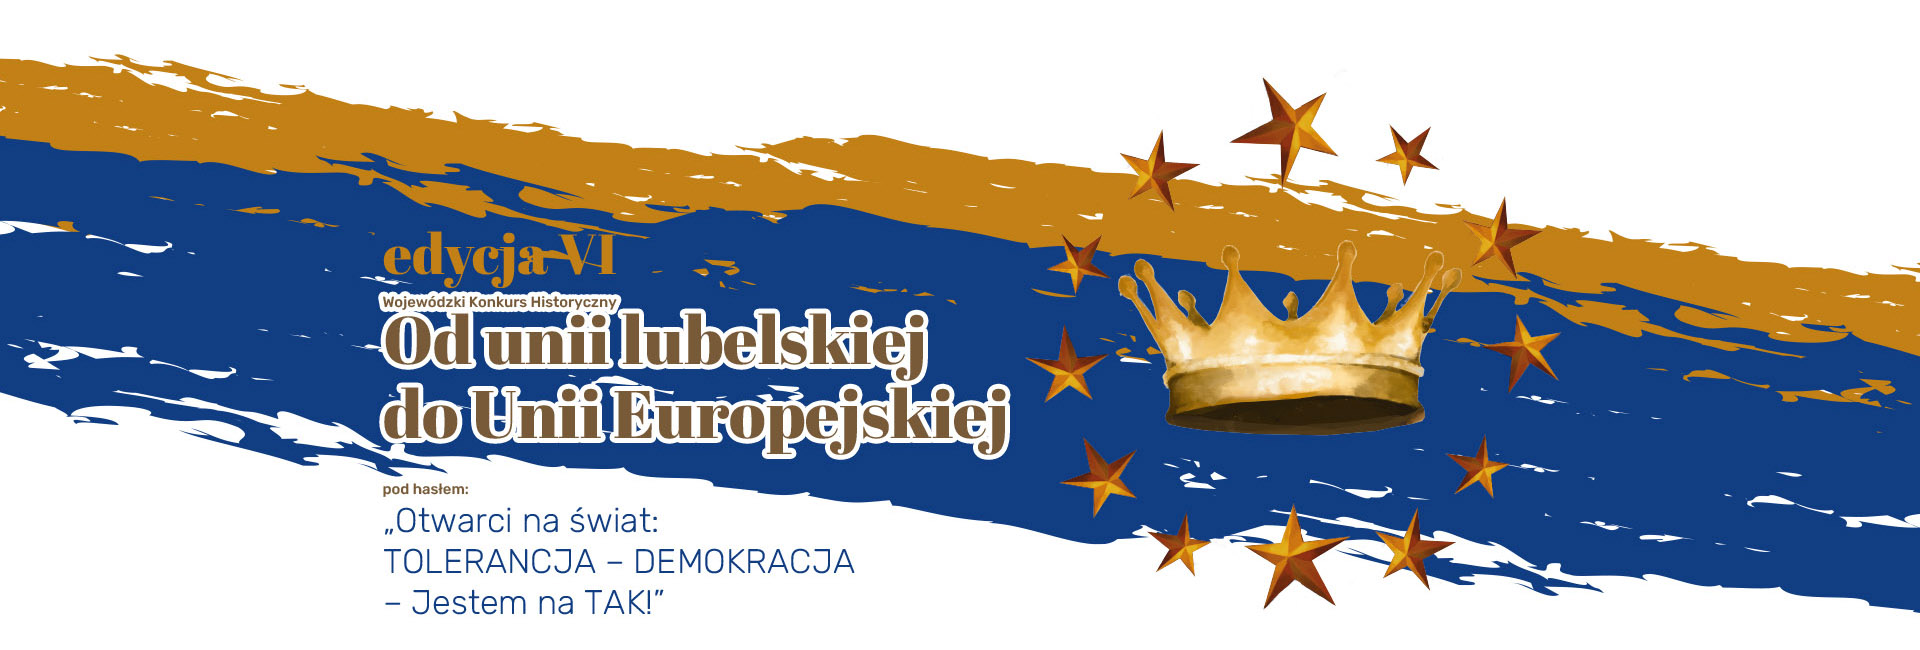 Edycja VI - Od unii lubelskiej do Uni Europejskiej po  hasłem Otwarci na swiat TOLERANCJA - DEMOKRACJA - Jestem na TAK